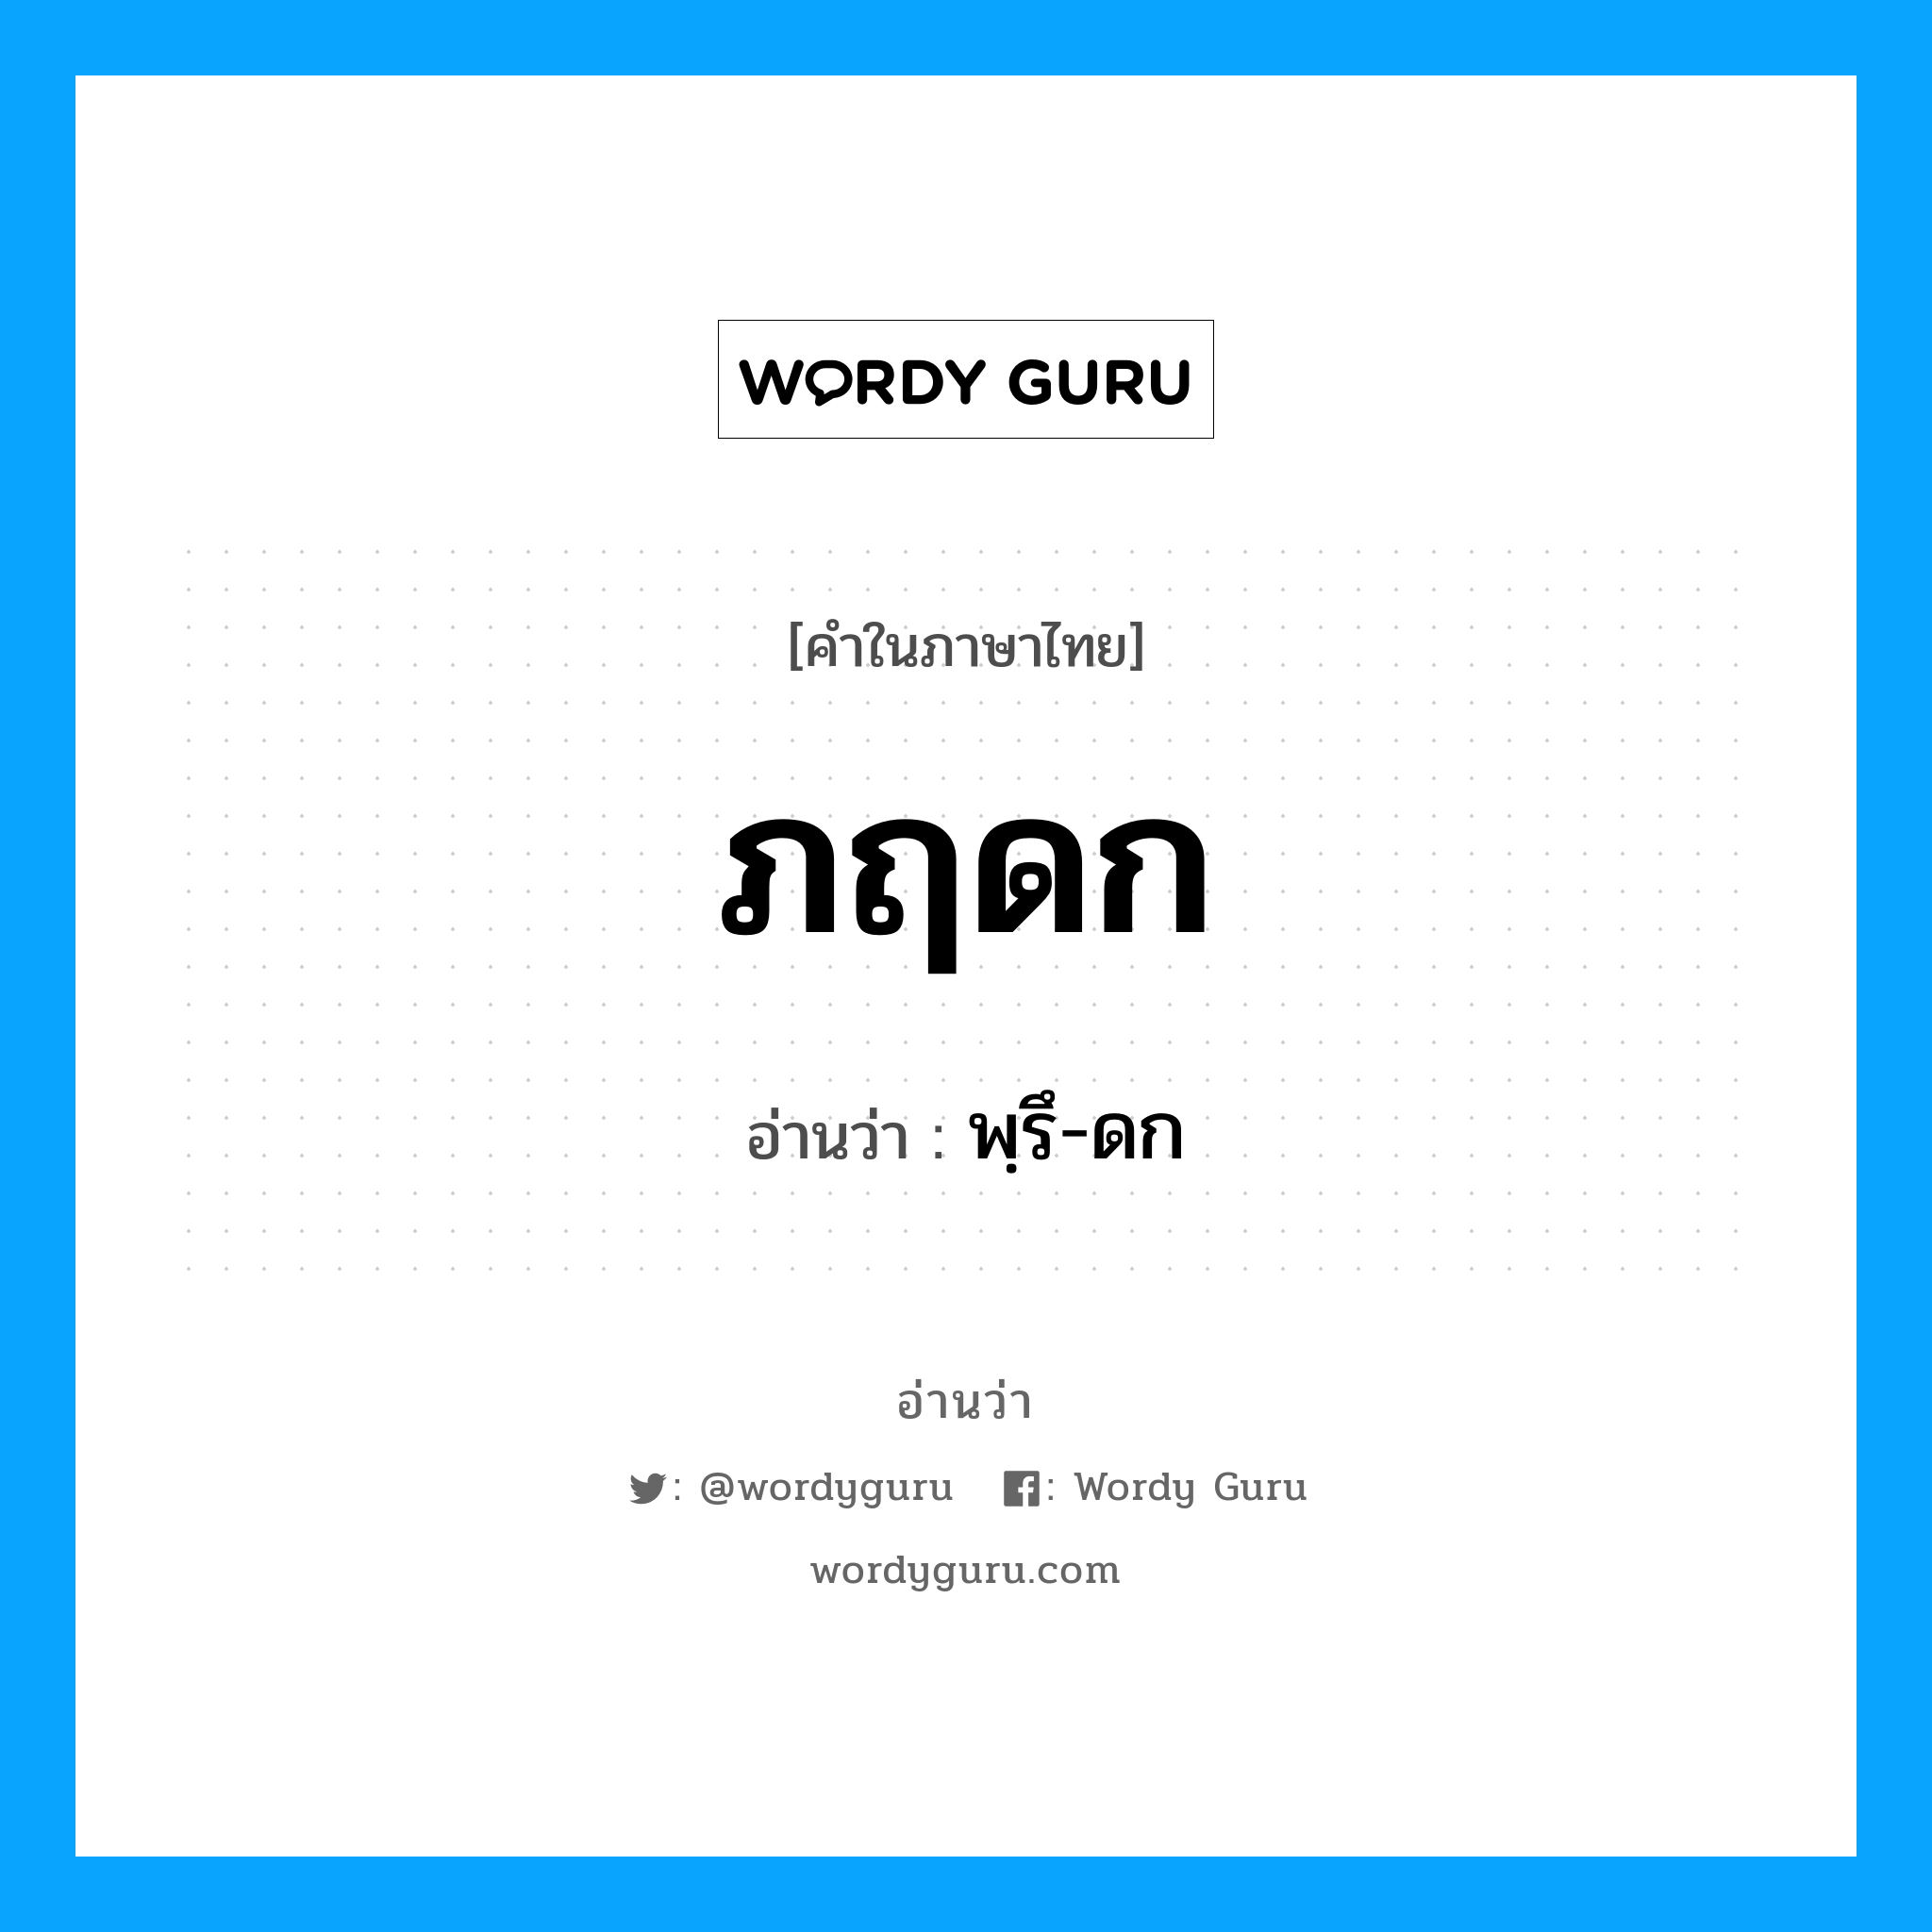 พฺรึ-ดก เป็นคำอ่านของคำไหน?, คำในภาษาไทย พฺรึ-ดก อ่านว่า ภฤดก